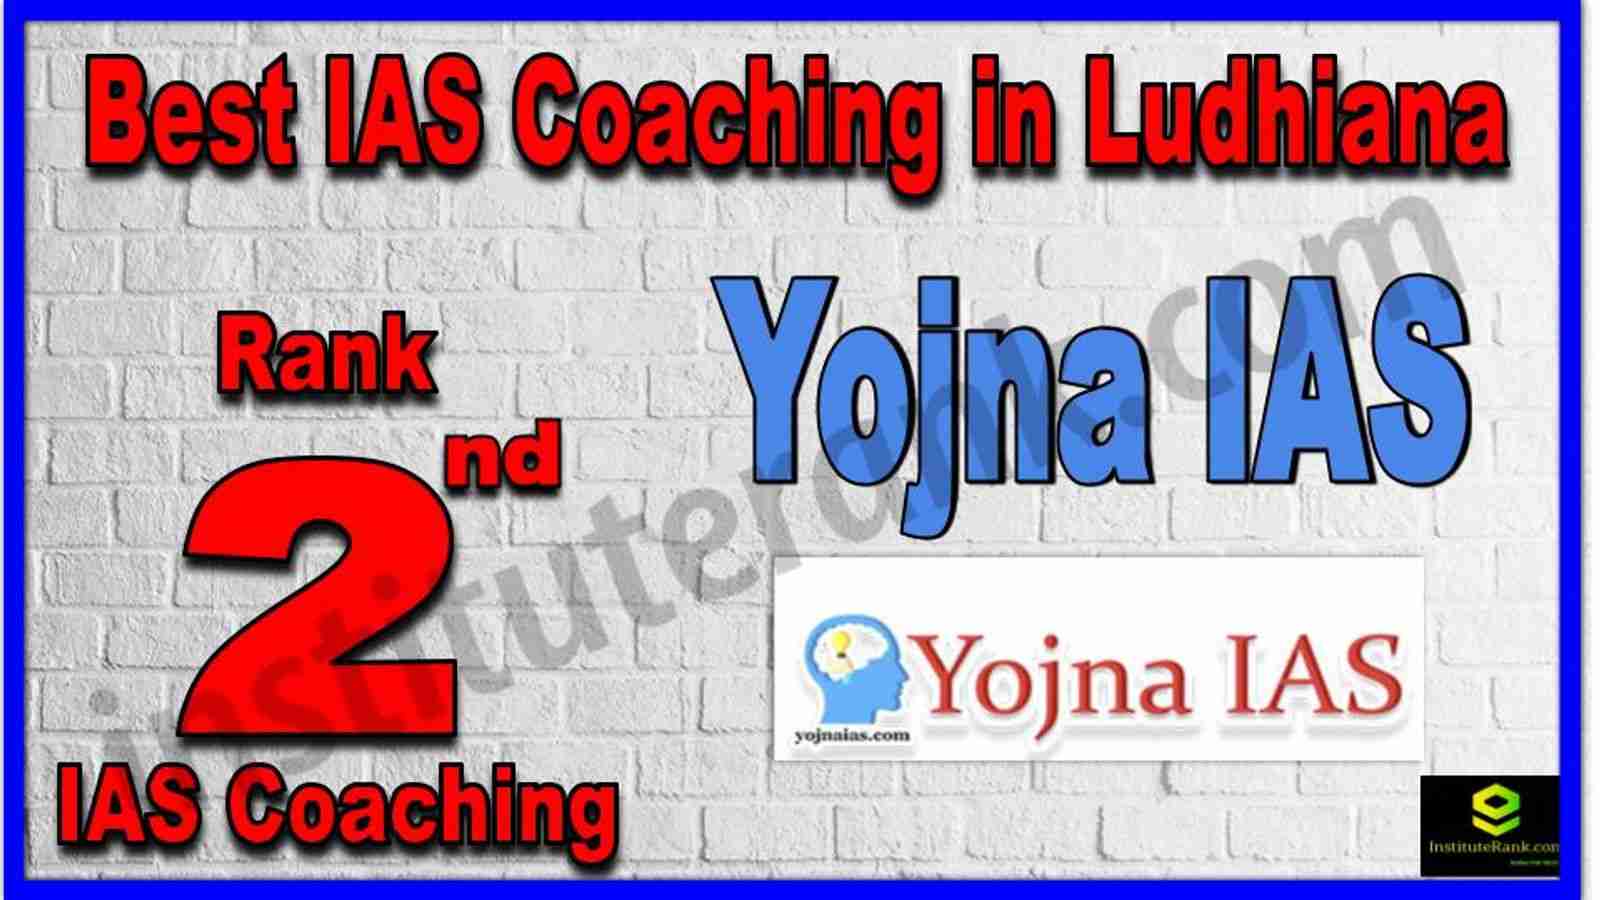 Rank 2nd Best IAS Coaching in Ludhiana